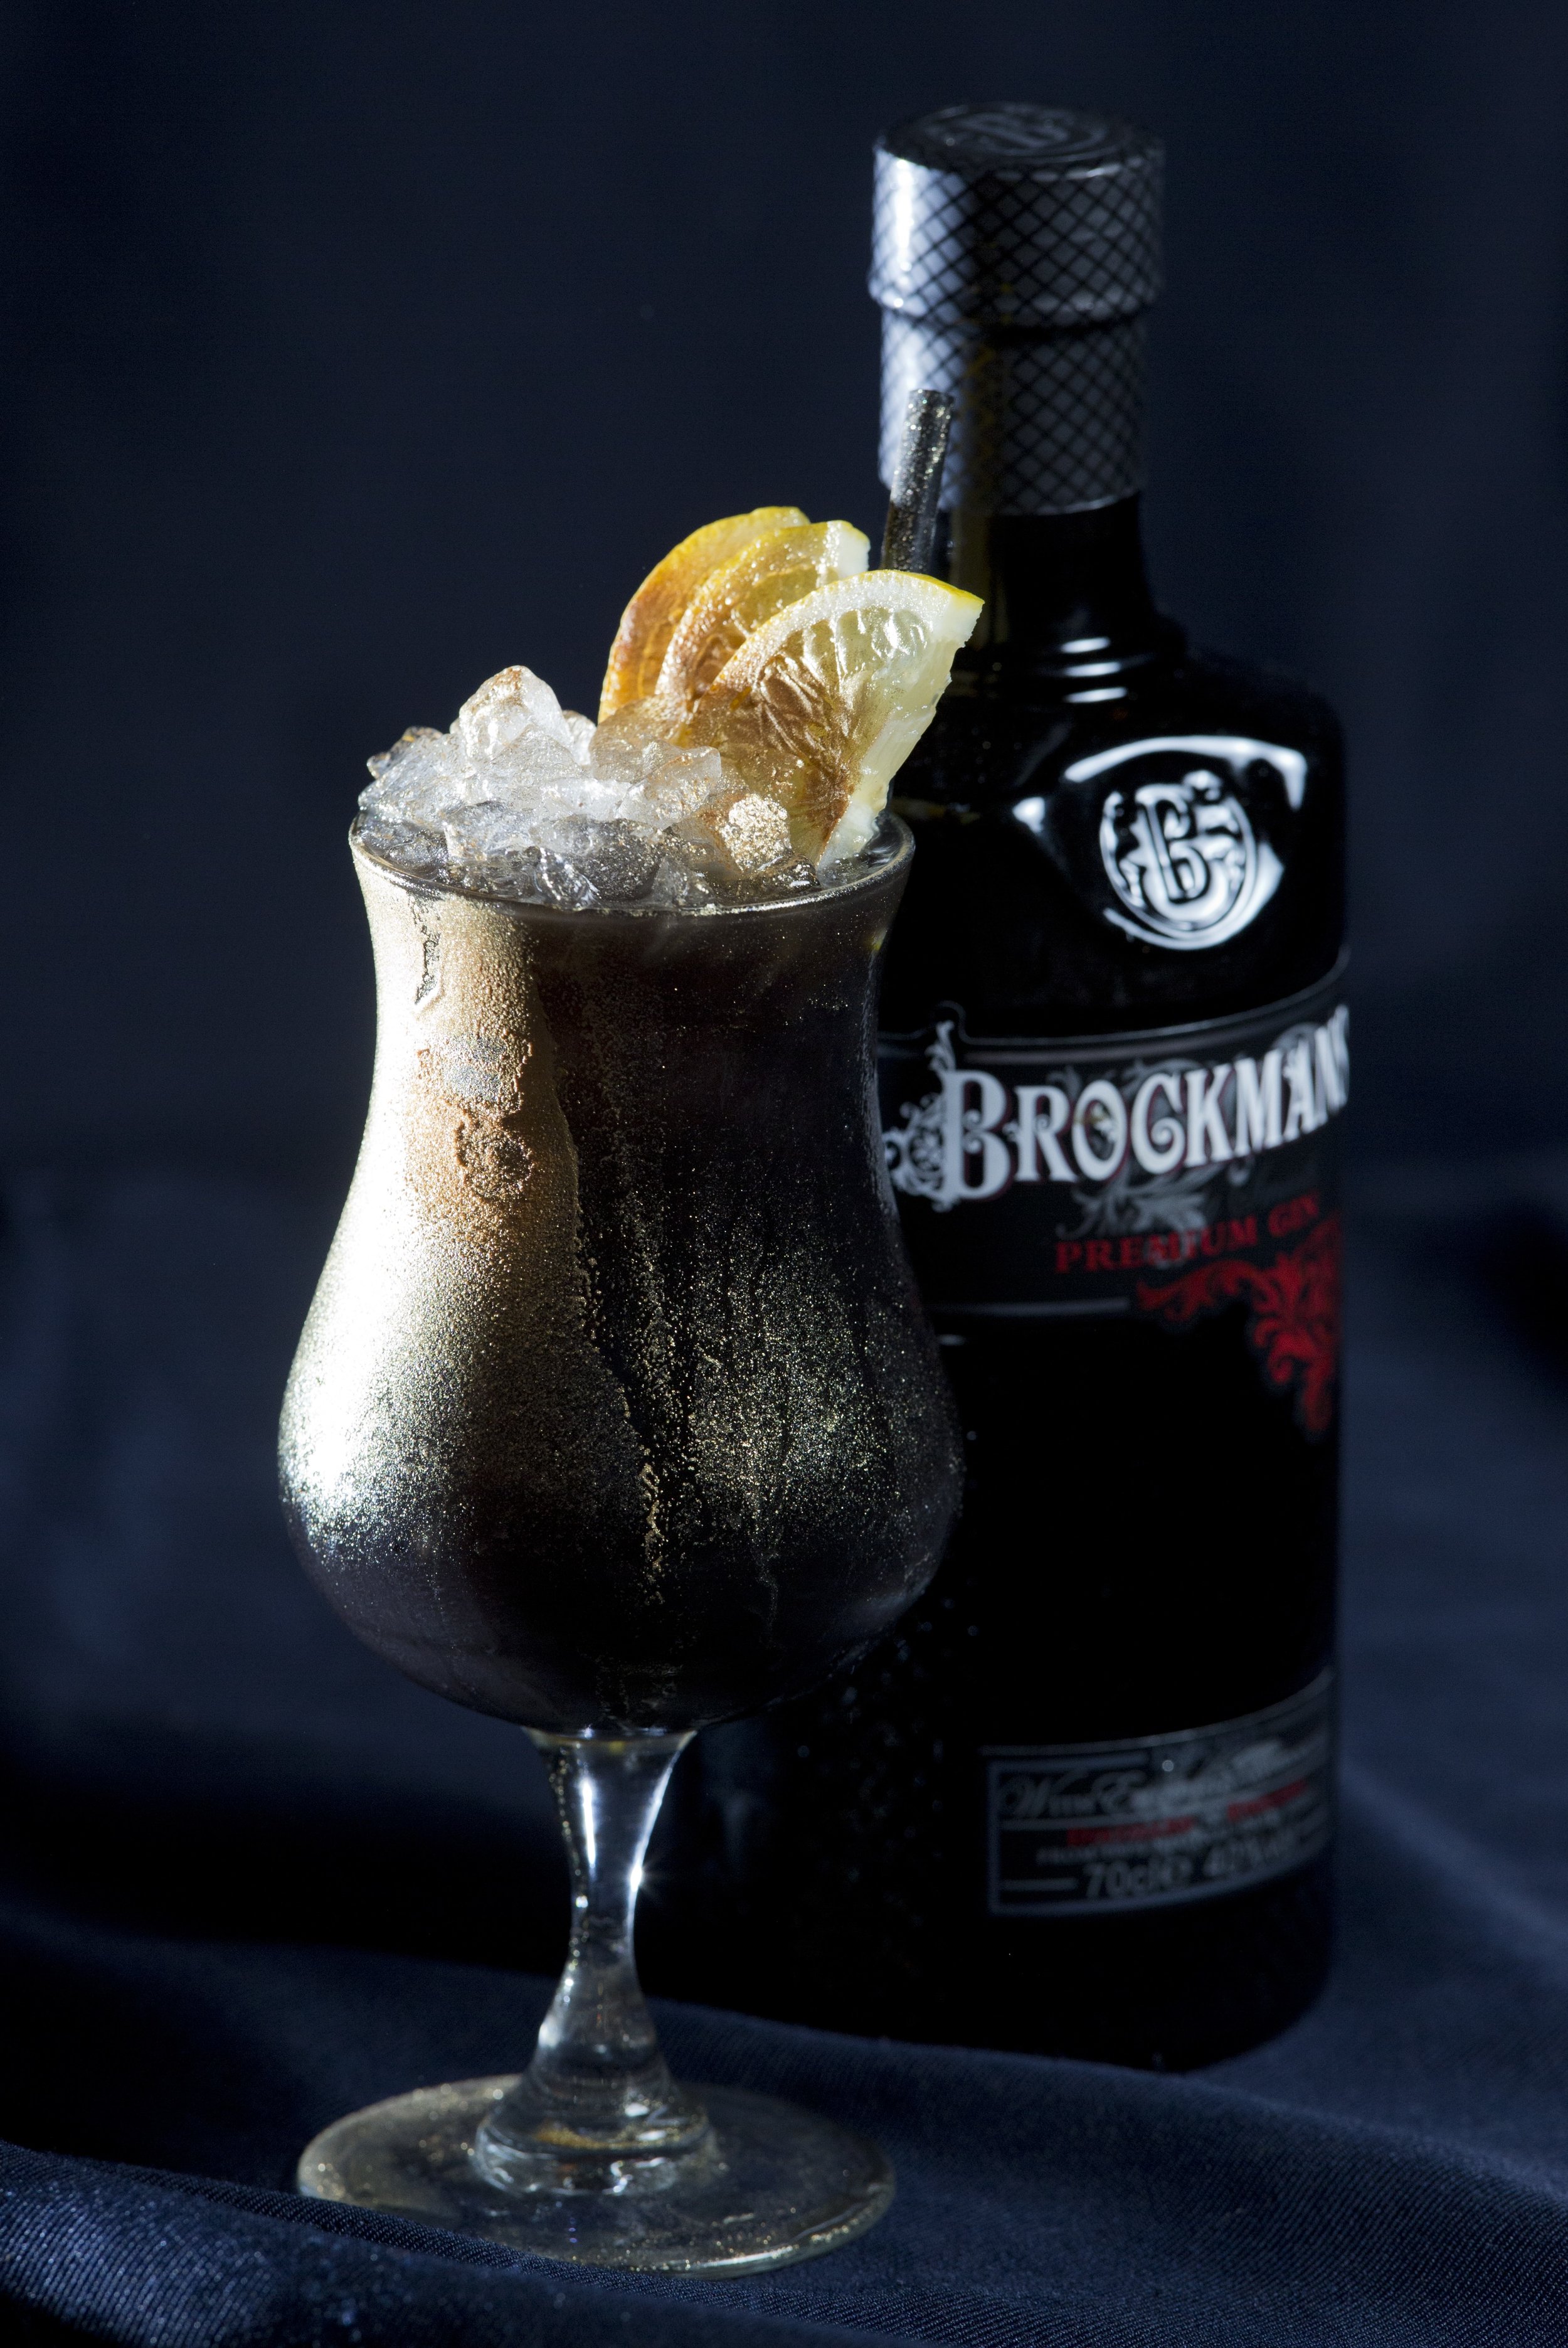 Delightful Cocktails for Día de los Muertos — THE GILDED BELLINI